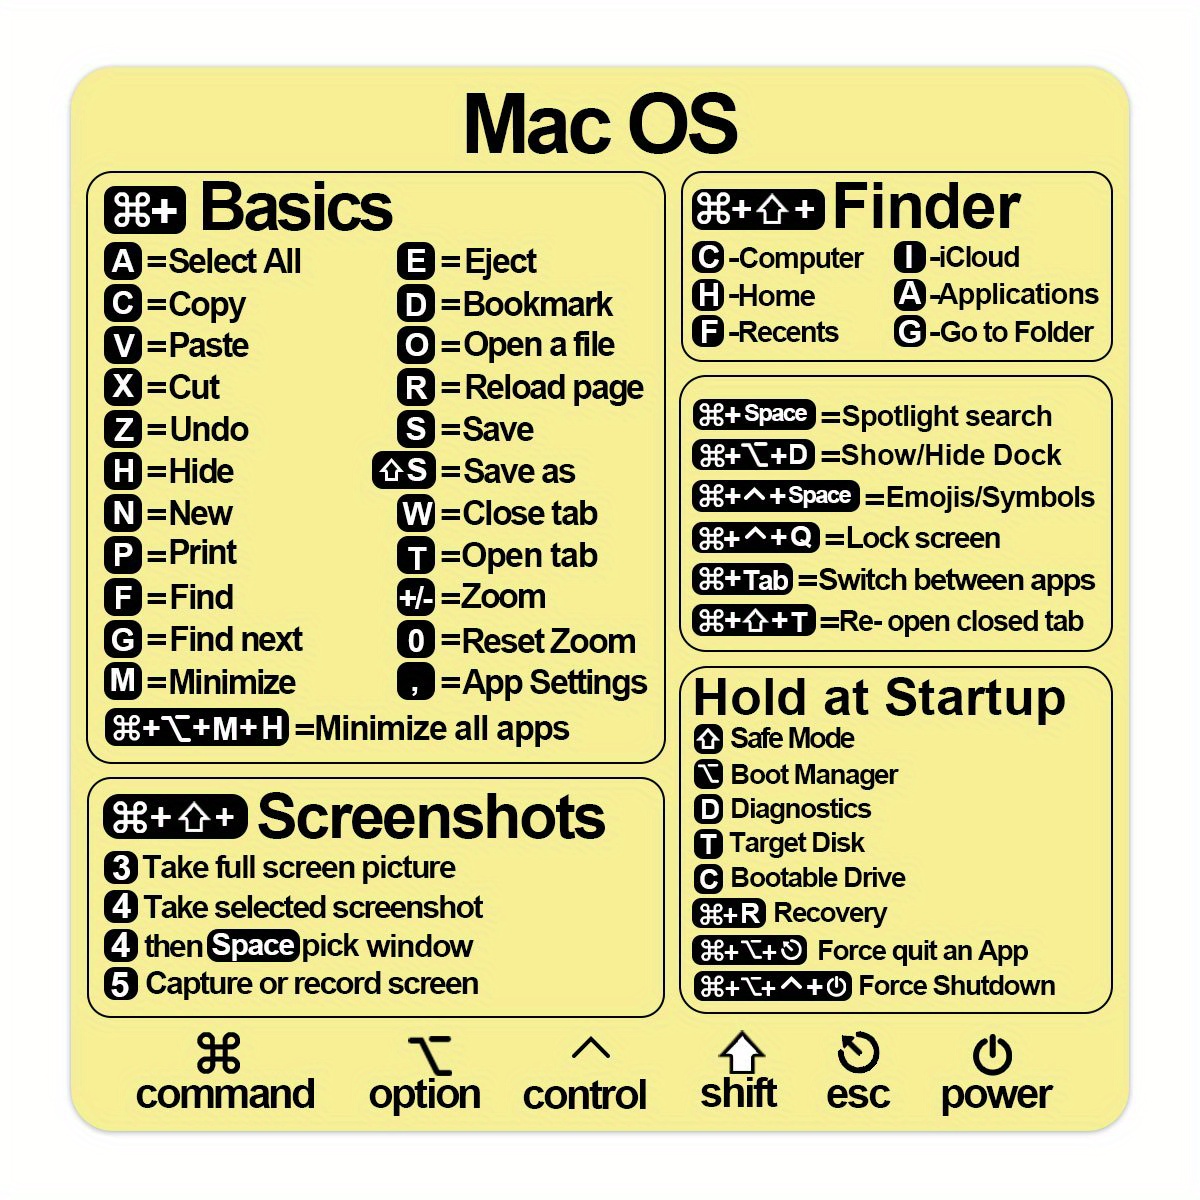 1 feuille Autocollant de raccourci clavier compatible avec MacBook